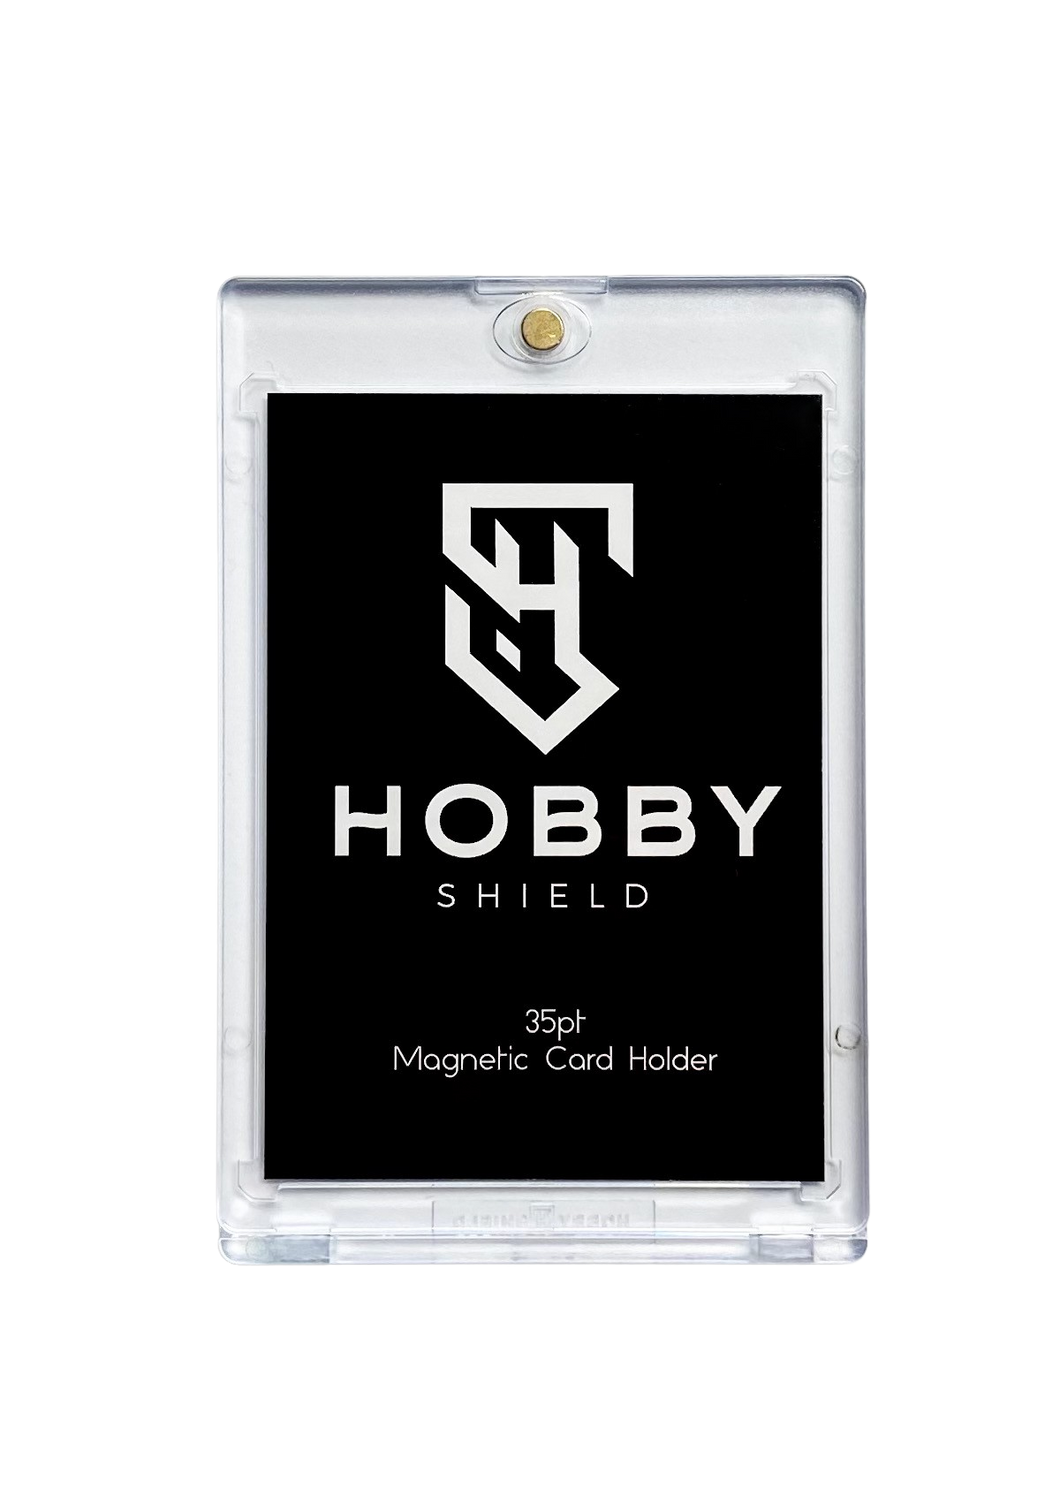 35pt Magnetic Card Holder (No Logo) - 25 Count